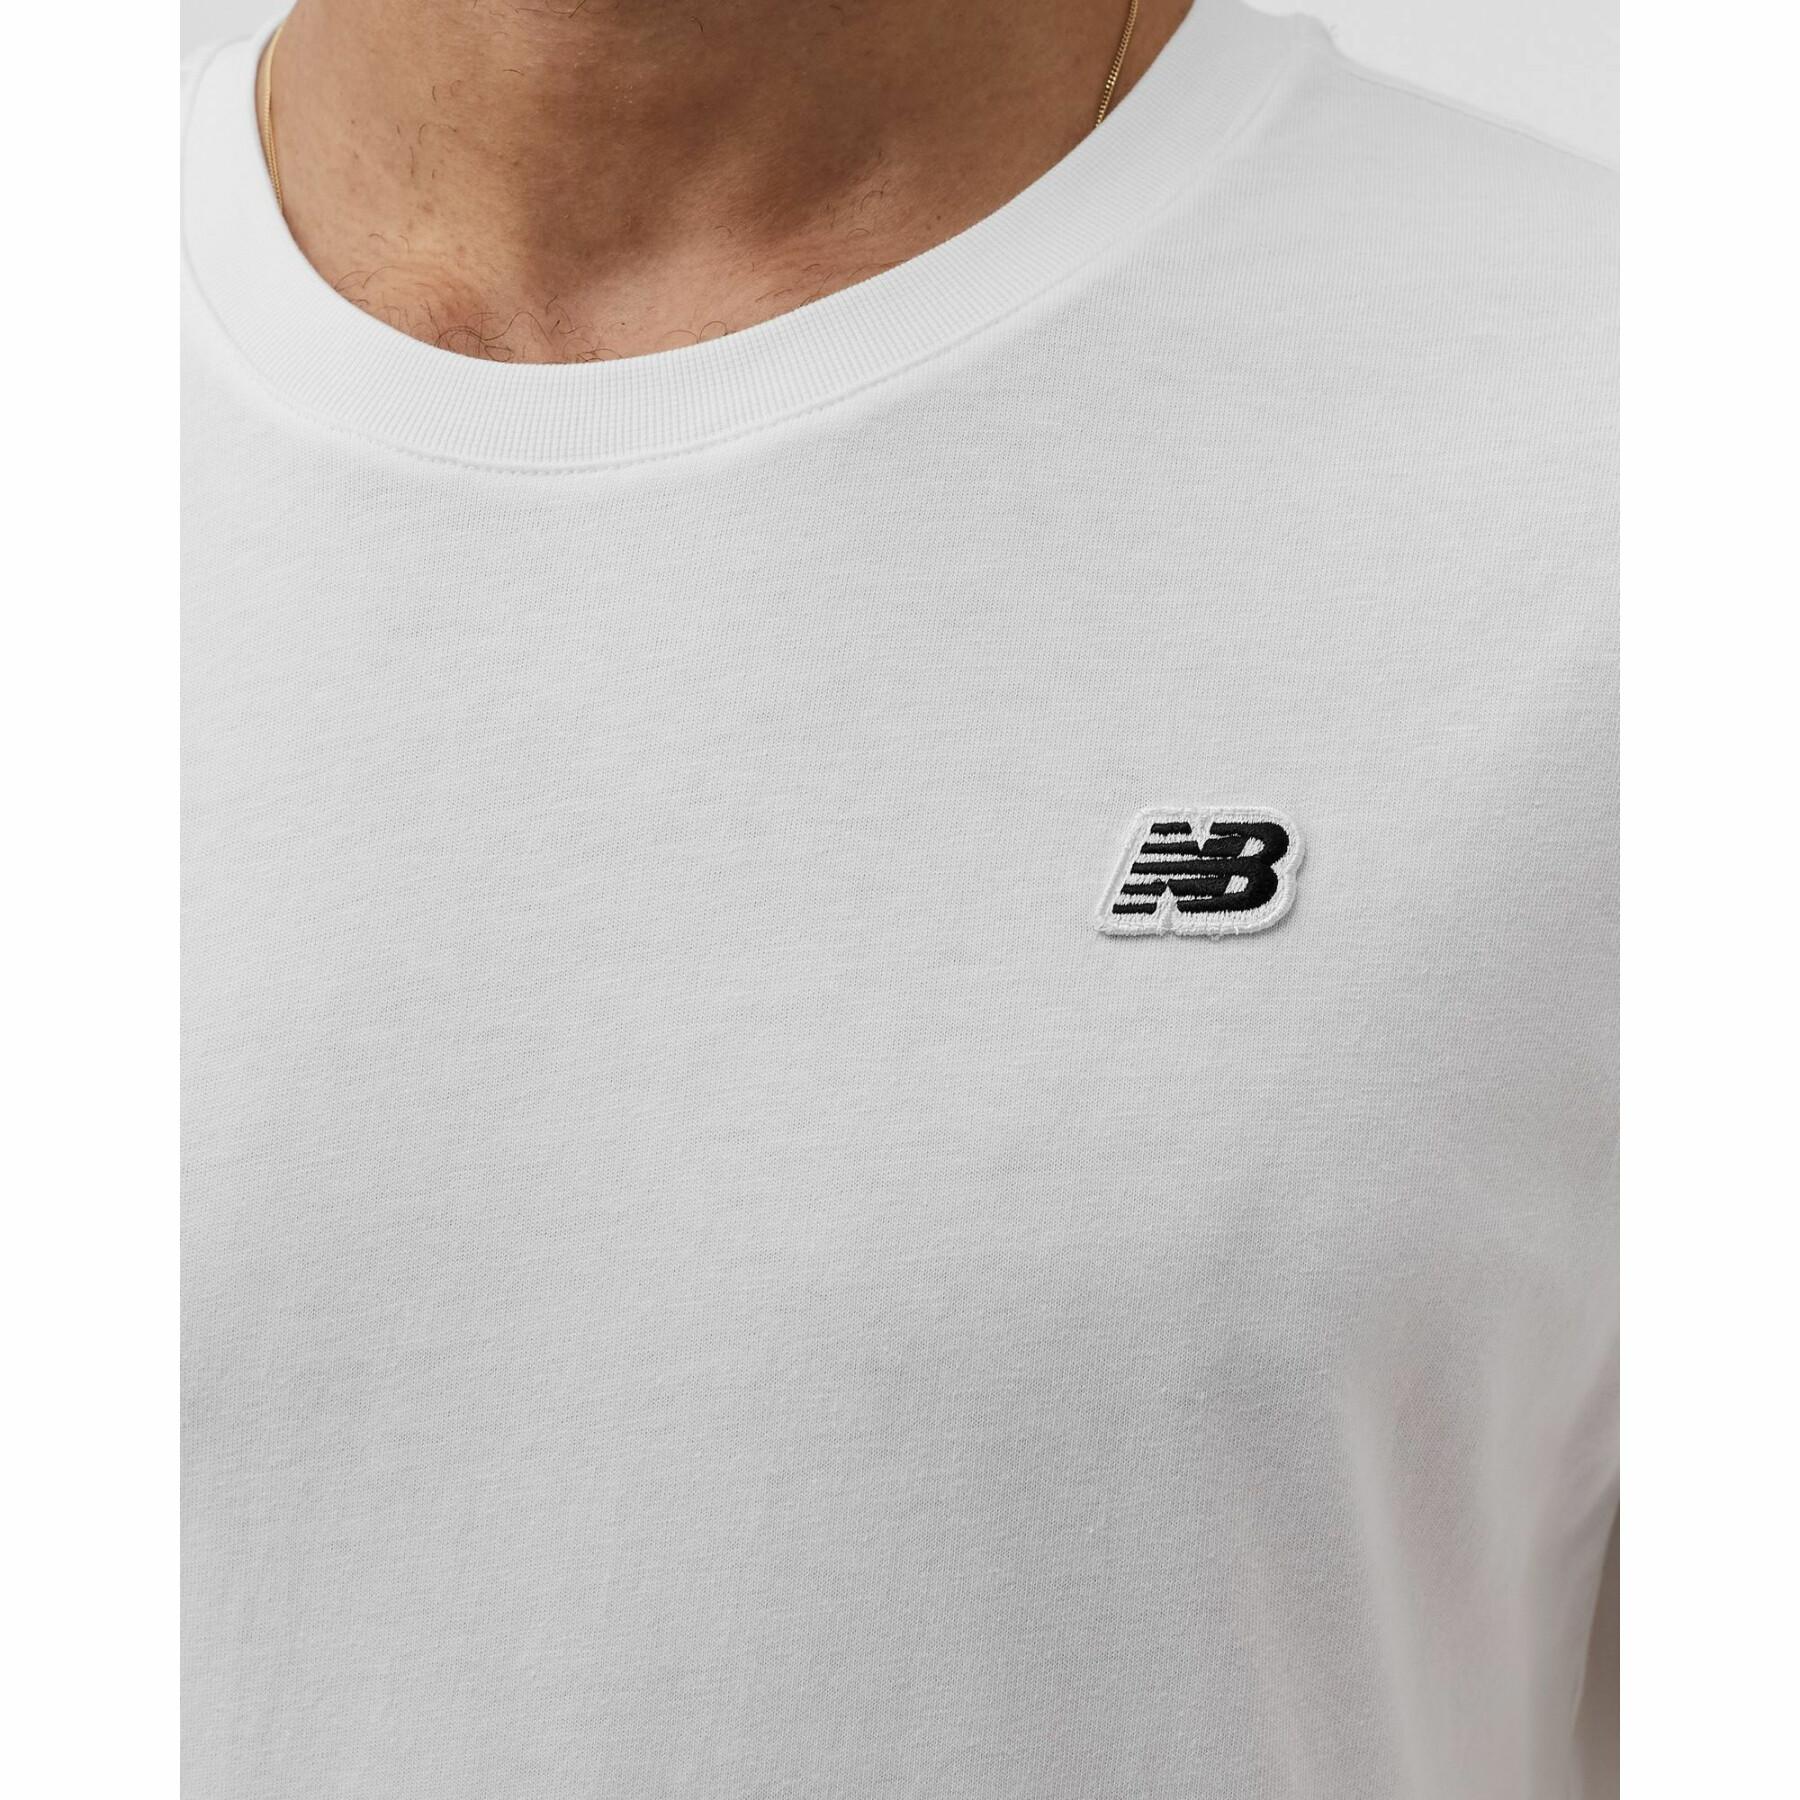 Camiseta New Balance Logo